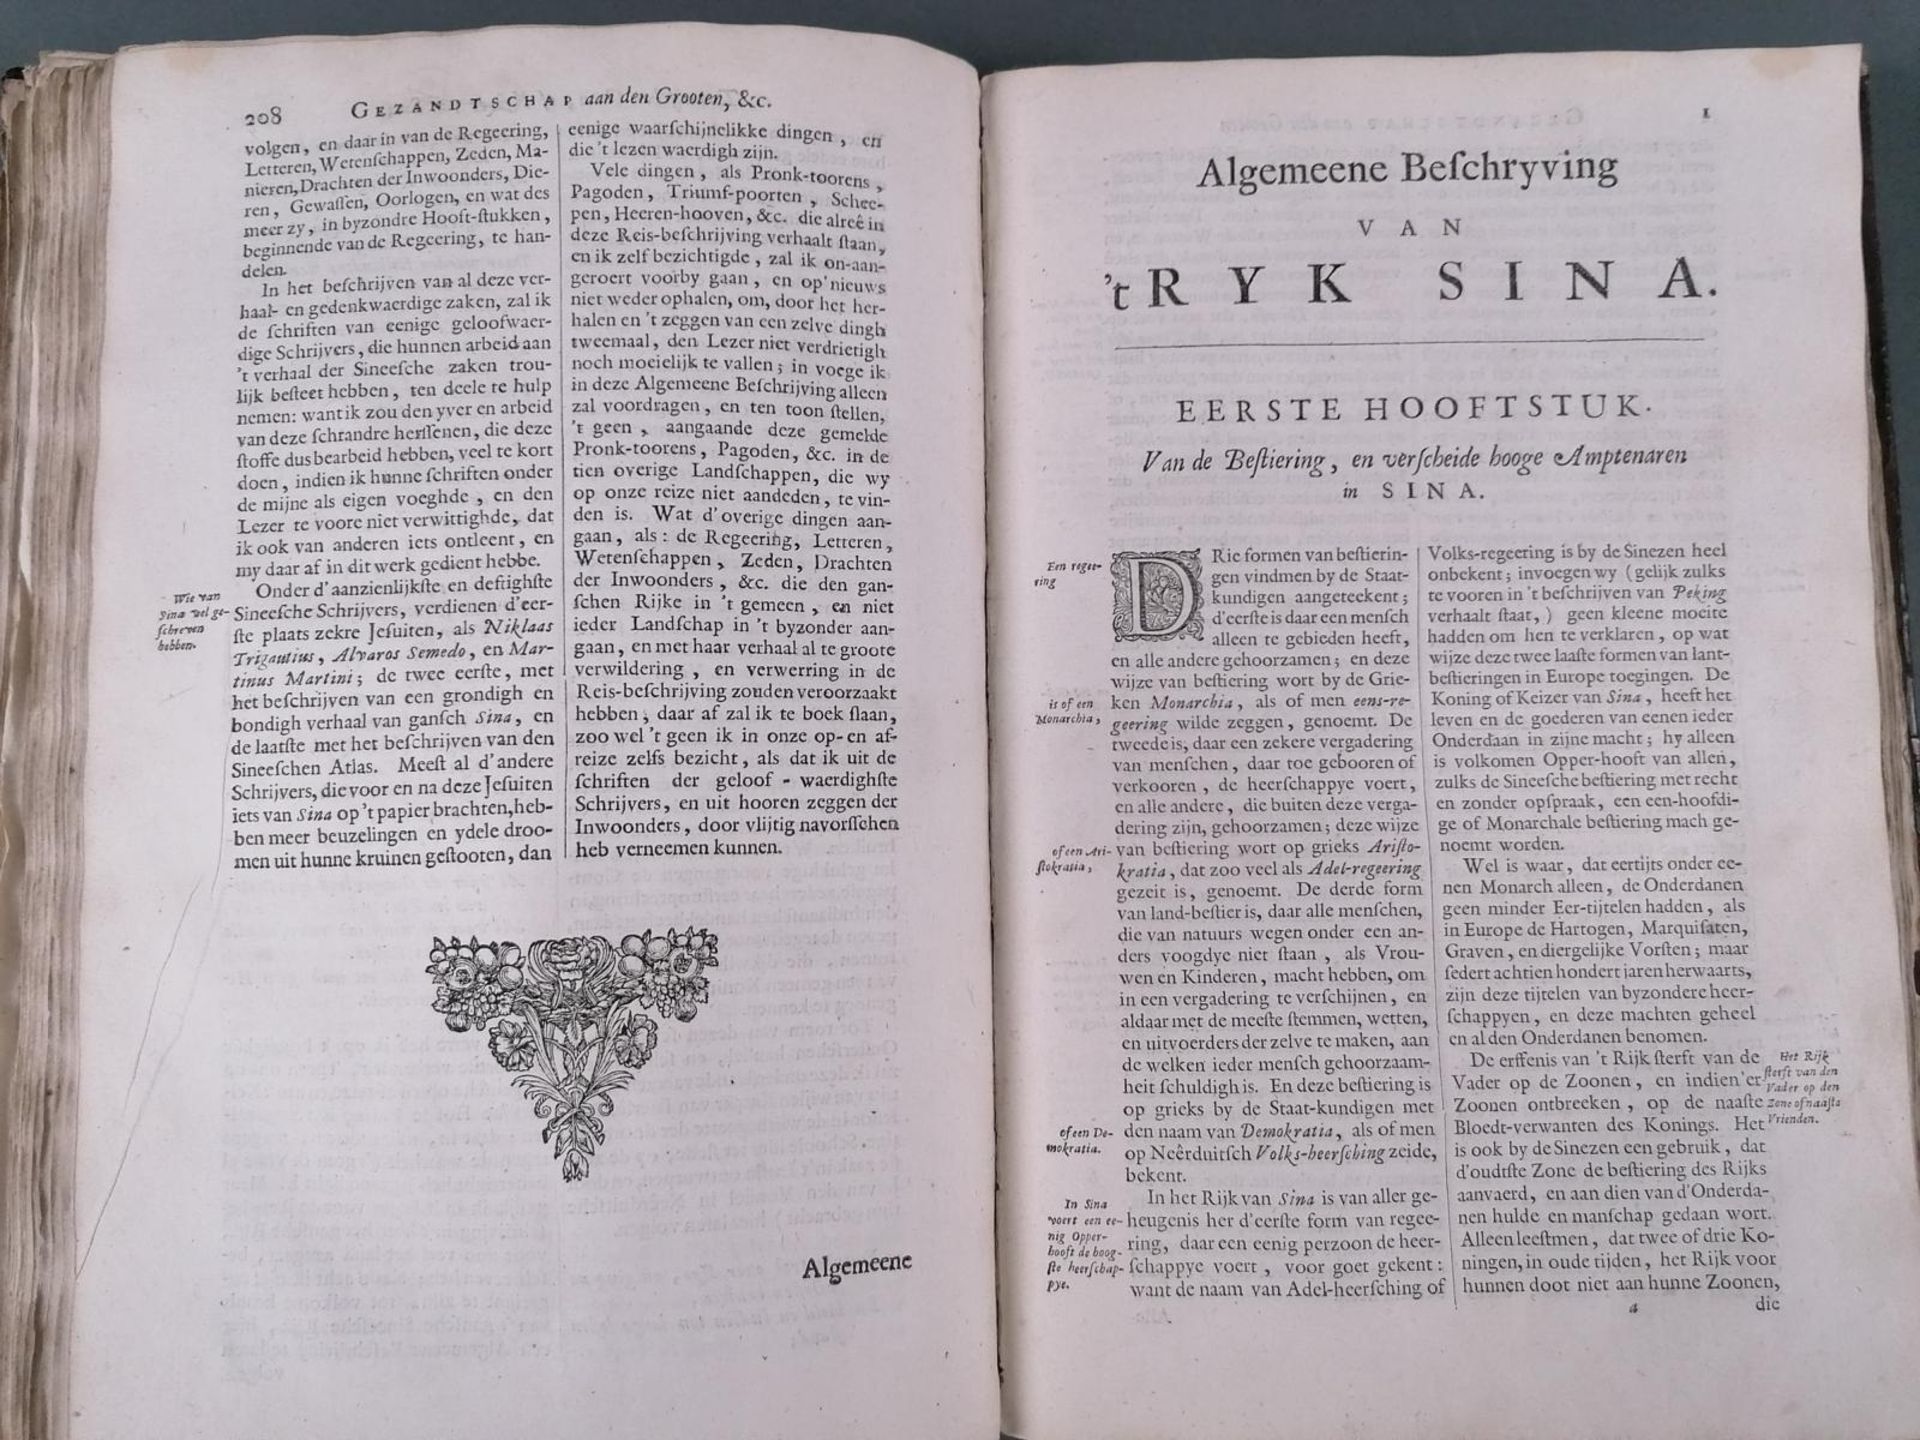 Nieuhofs China-Buch. 1665. (Die Gesandtschaft der Niederländischen Ostindienkompanie an den großen T - Image 20 of 26